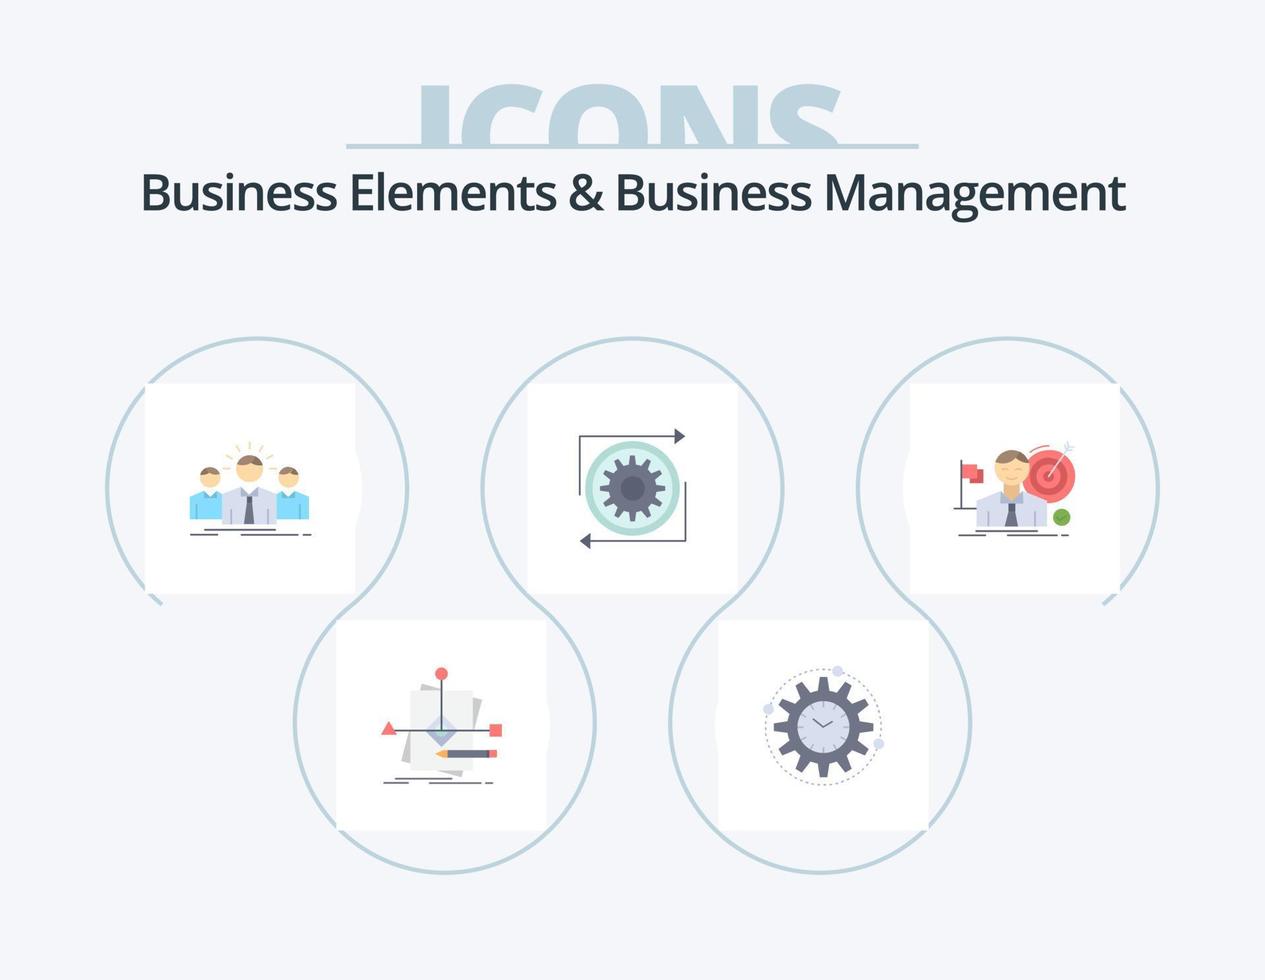 Elementos de negocio y gestión de negocios paquete de iconos planos 5 diseño de iconos. gestión. negocio. productividad. líder. empleado vector